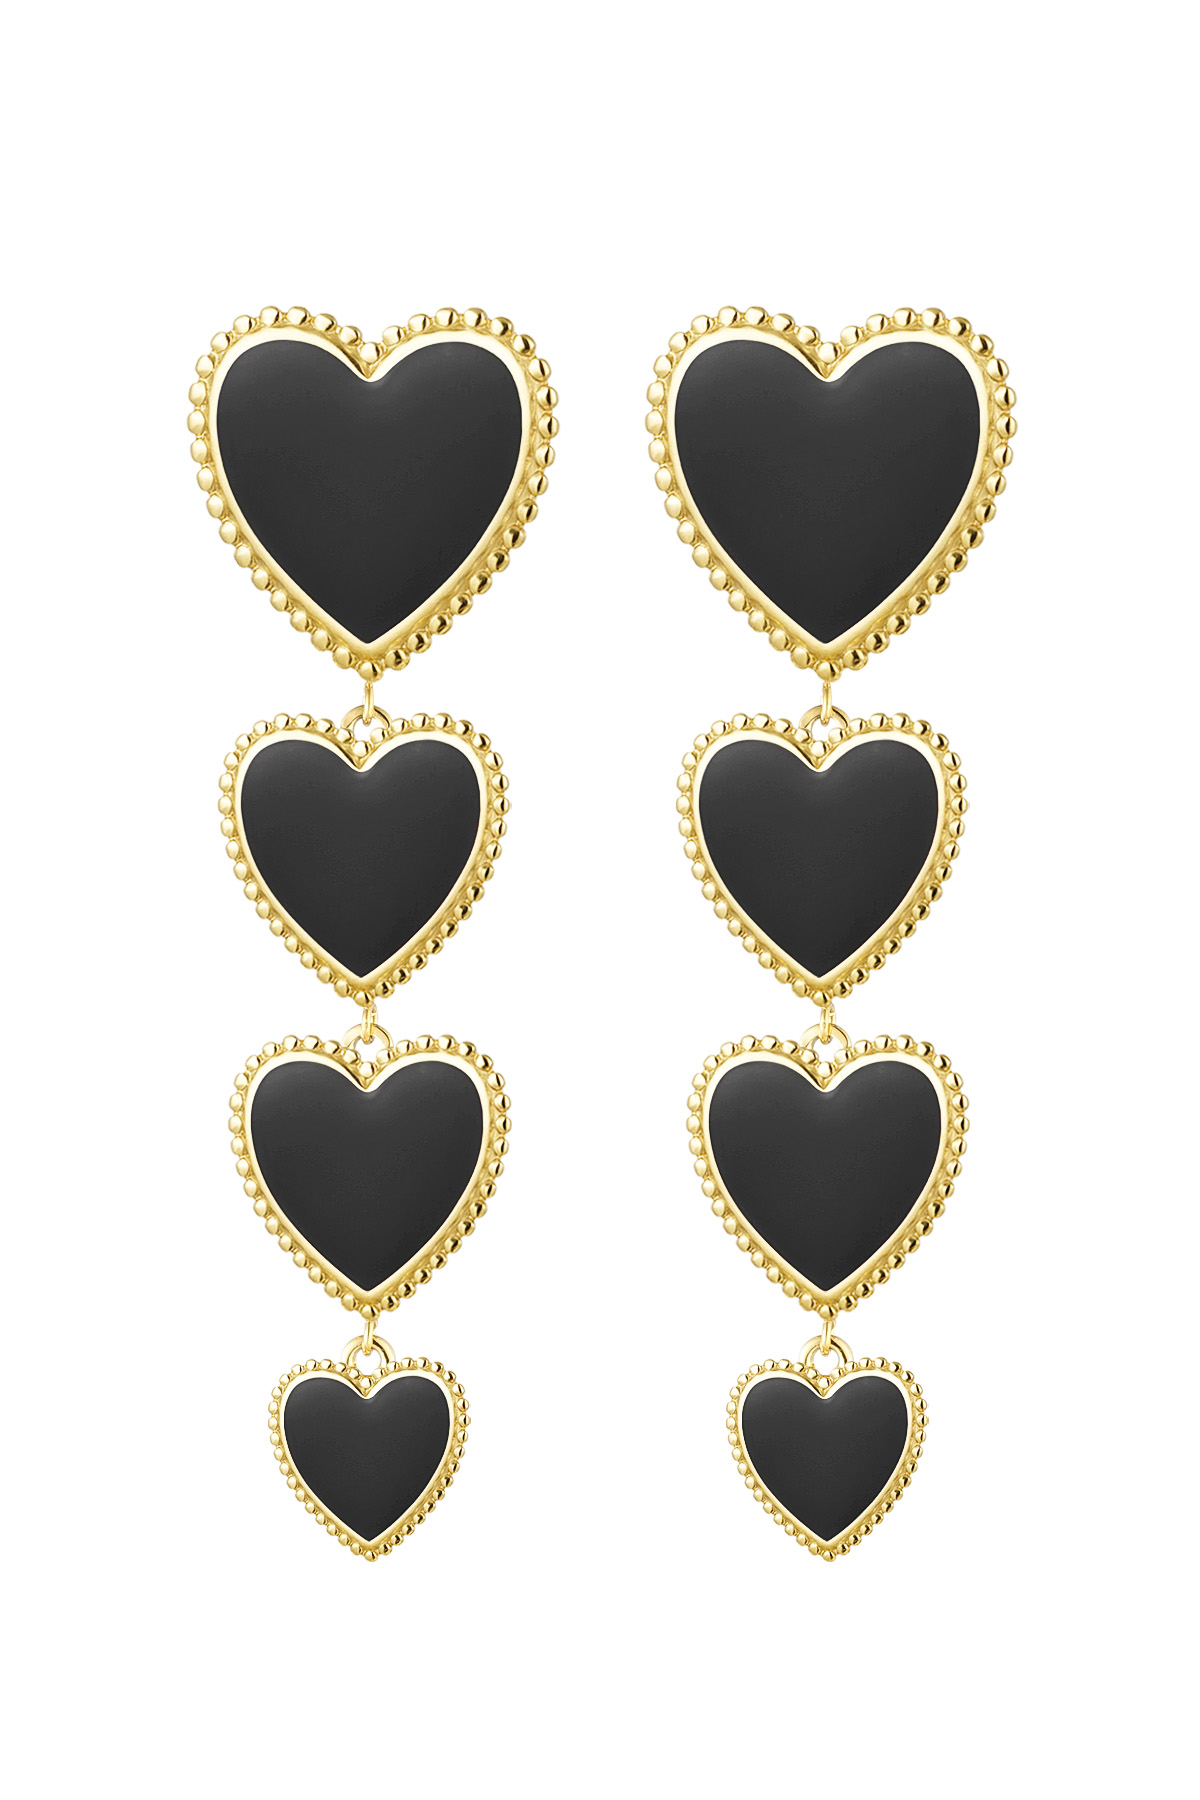 Earrings hearts 4 in a row - black h5 